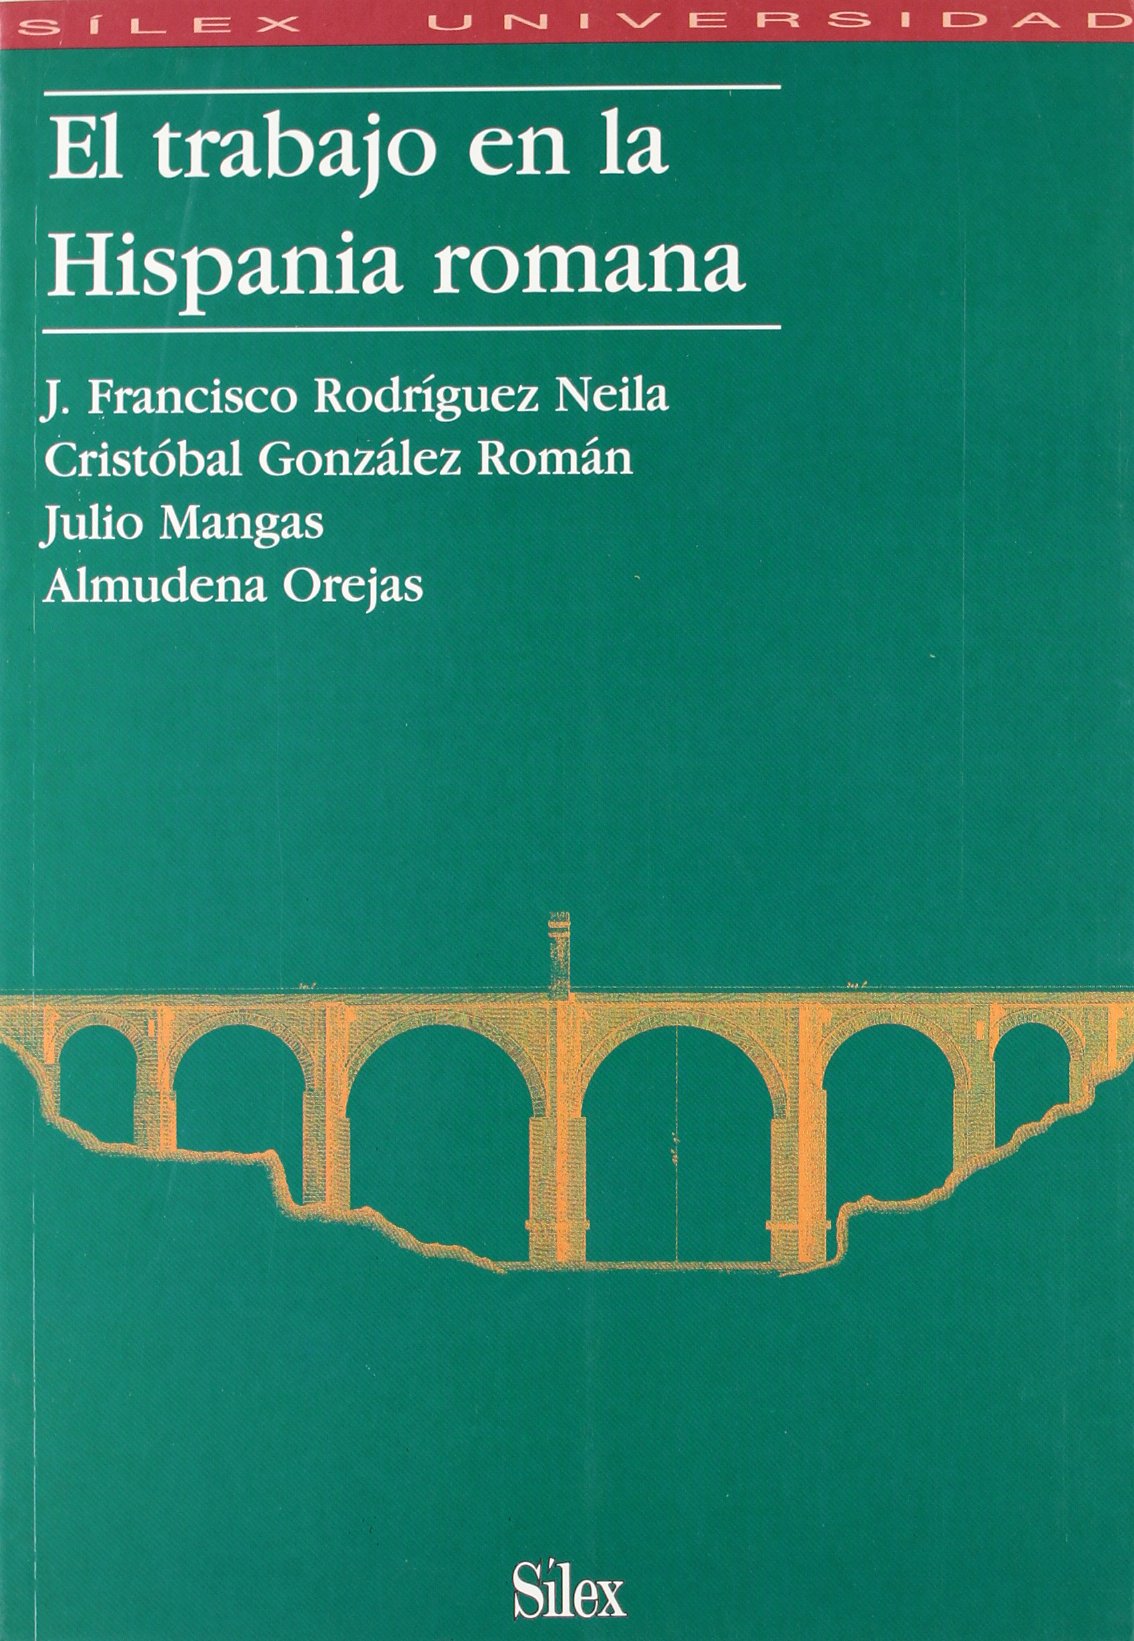 Imagen de portada del libro El trabajo en la Hispania romana